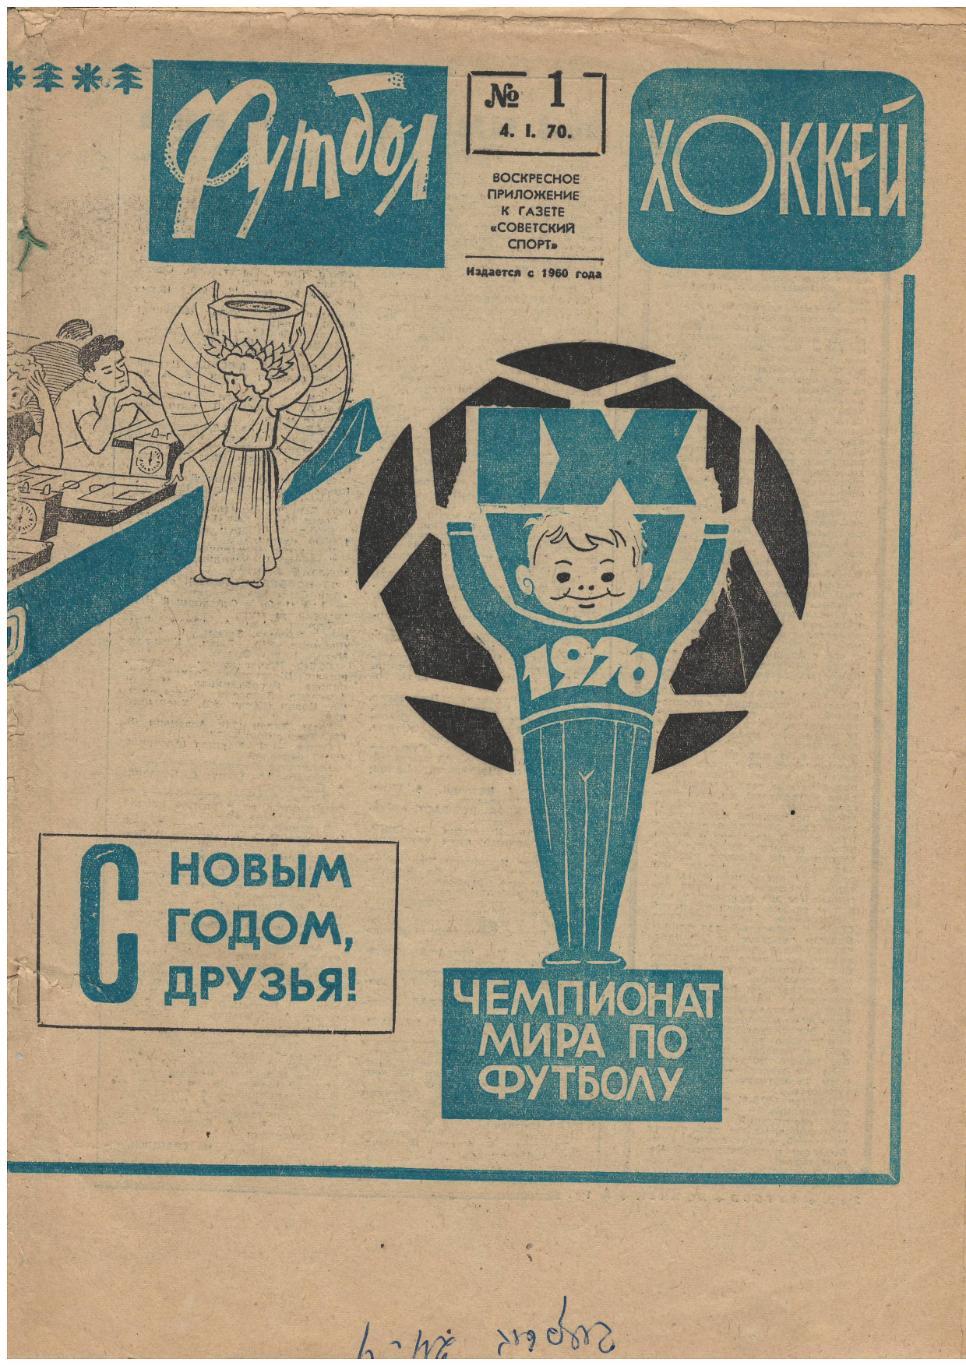 Еженедельник Футбол-хоккей № 1 1970 Очень редкий!